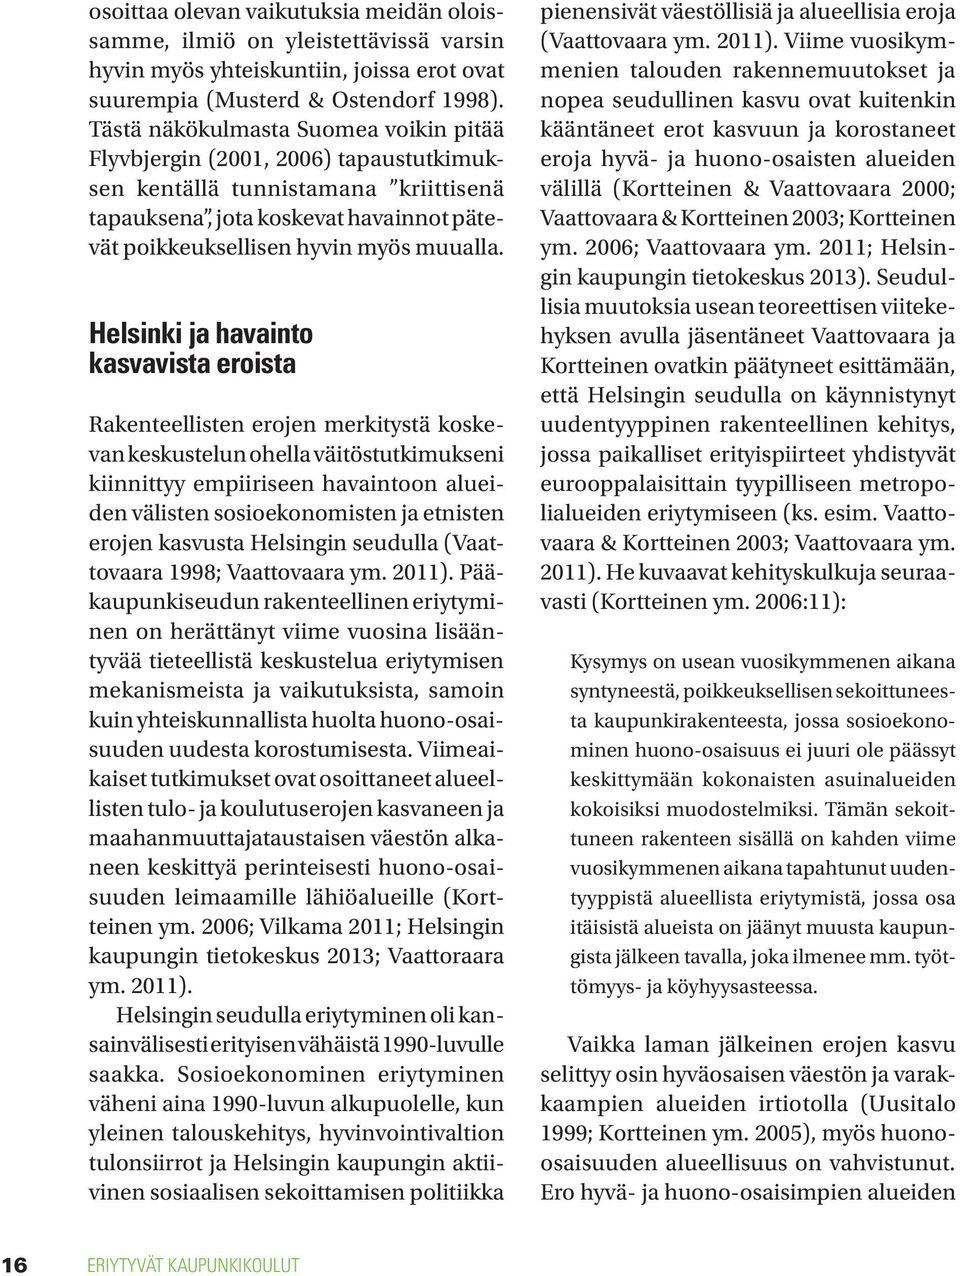 Helsinki ja havainto kasvavista eroista Rakenteellisten erojen merkitystä koskevan keskustelun ohella väitöstutkimukseni kiinnittyy empiiriseen havaintoon alueiden välisten sosioekonomisten ja